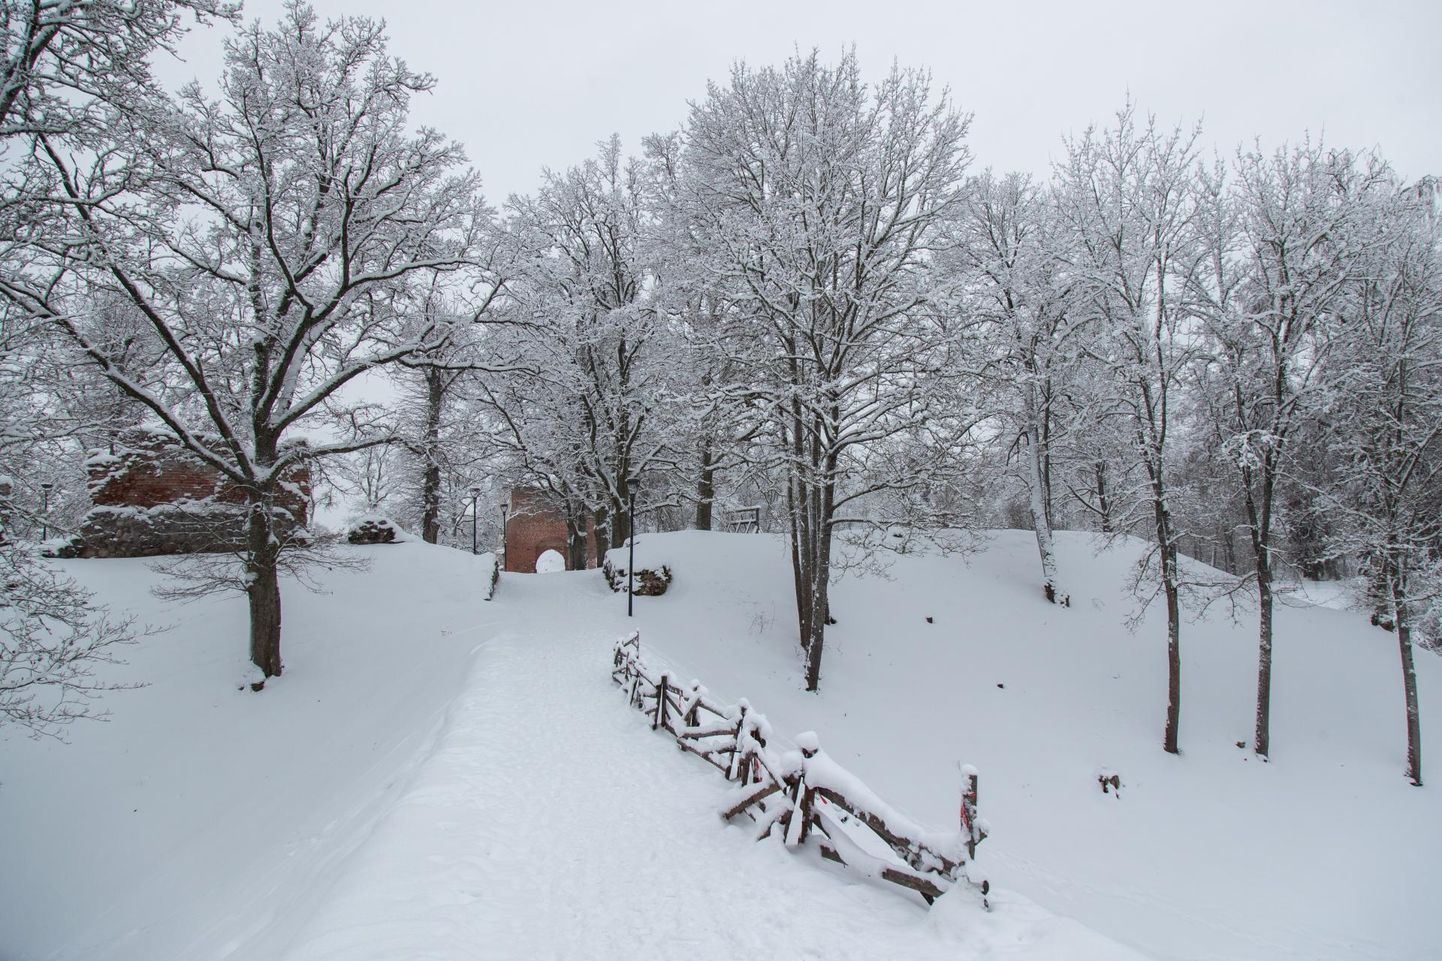 Viljandi Linnahooldus oma masinatega lossimägedesse lund lükkama ei pääse ja omal vastutusel võivad üle varisenud tammi minna ainult jalakäijad.